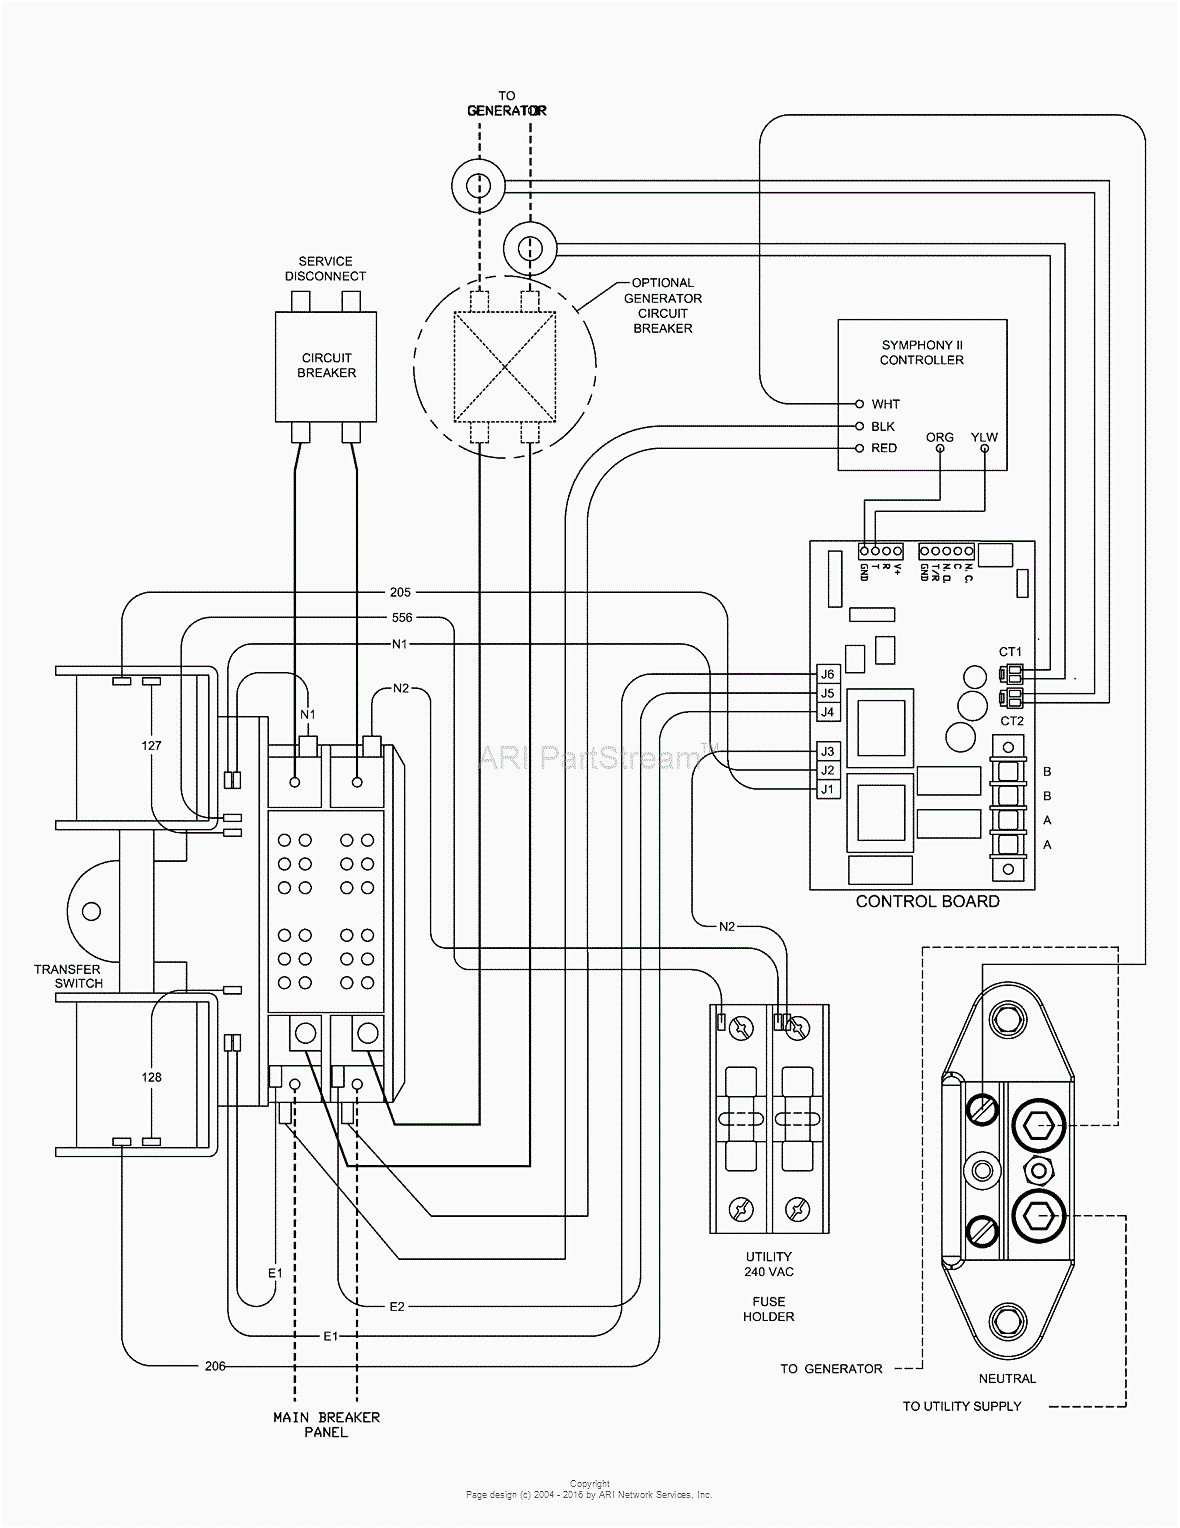 Generac Generator Wiring Diagrams